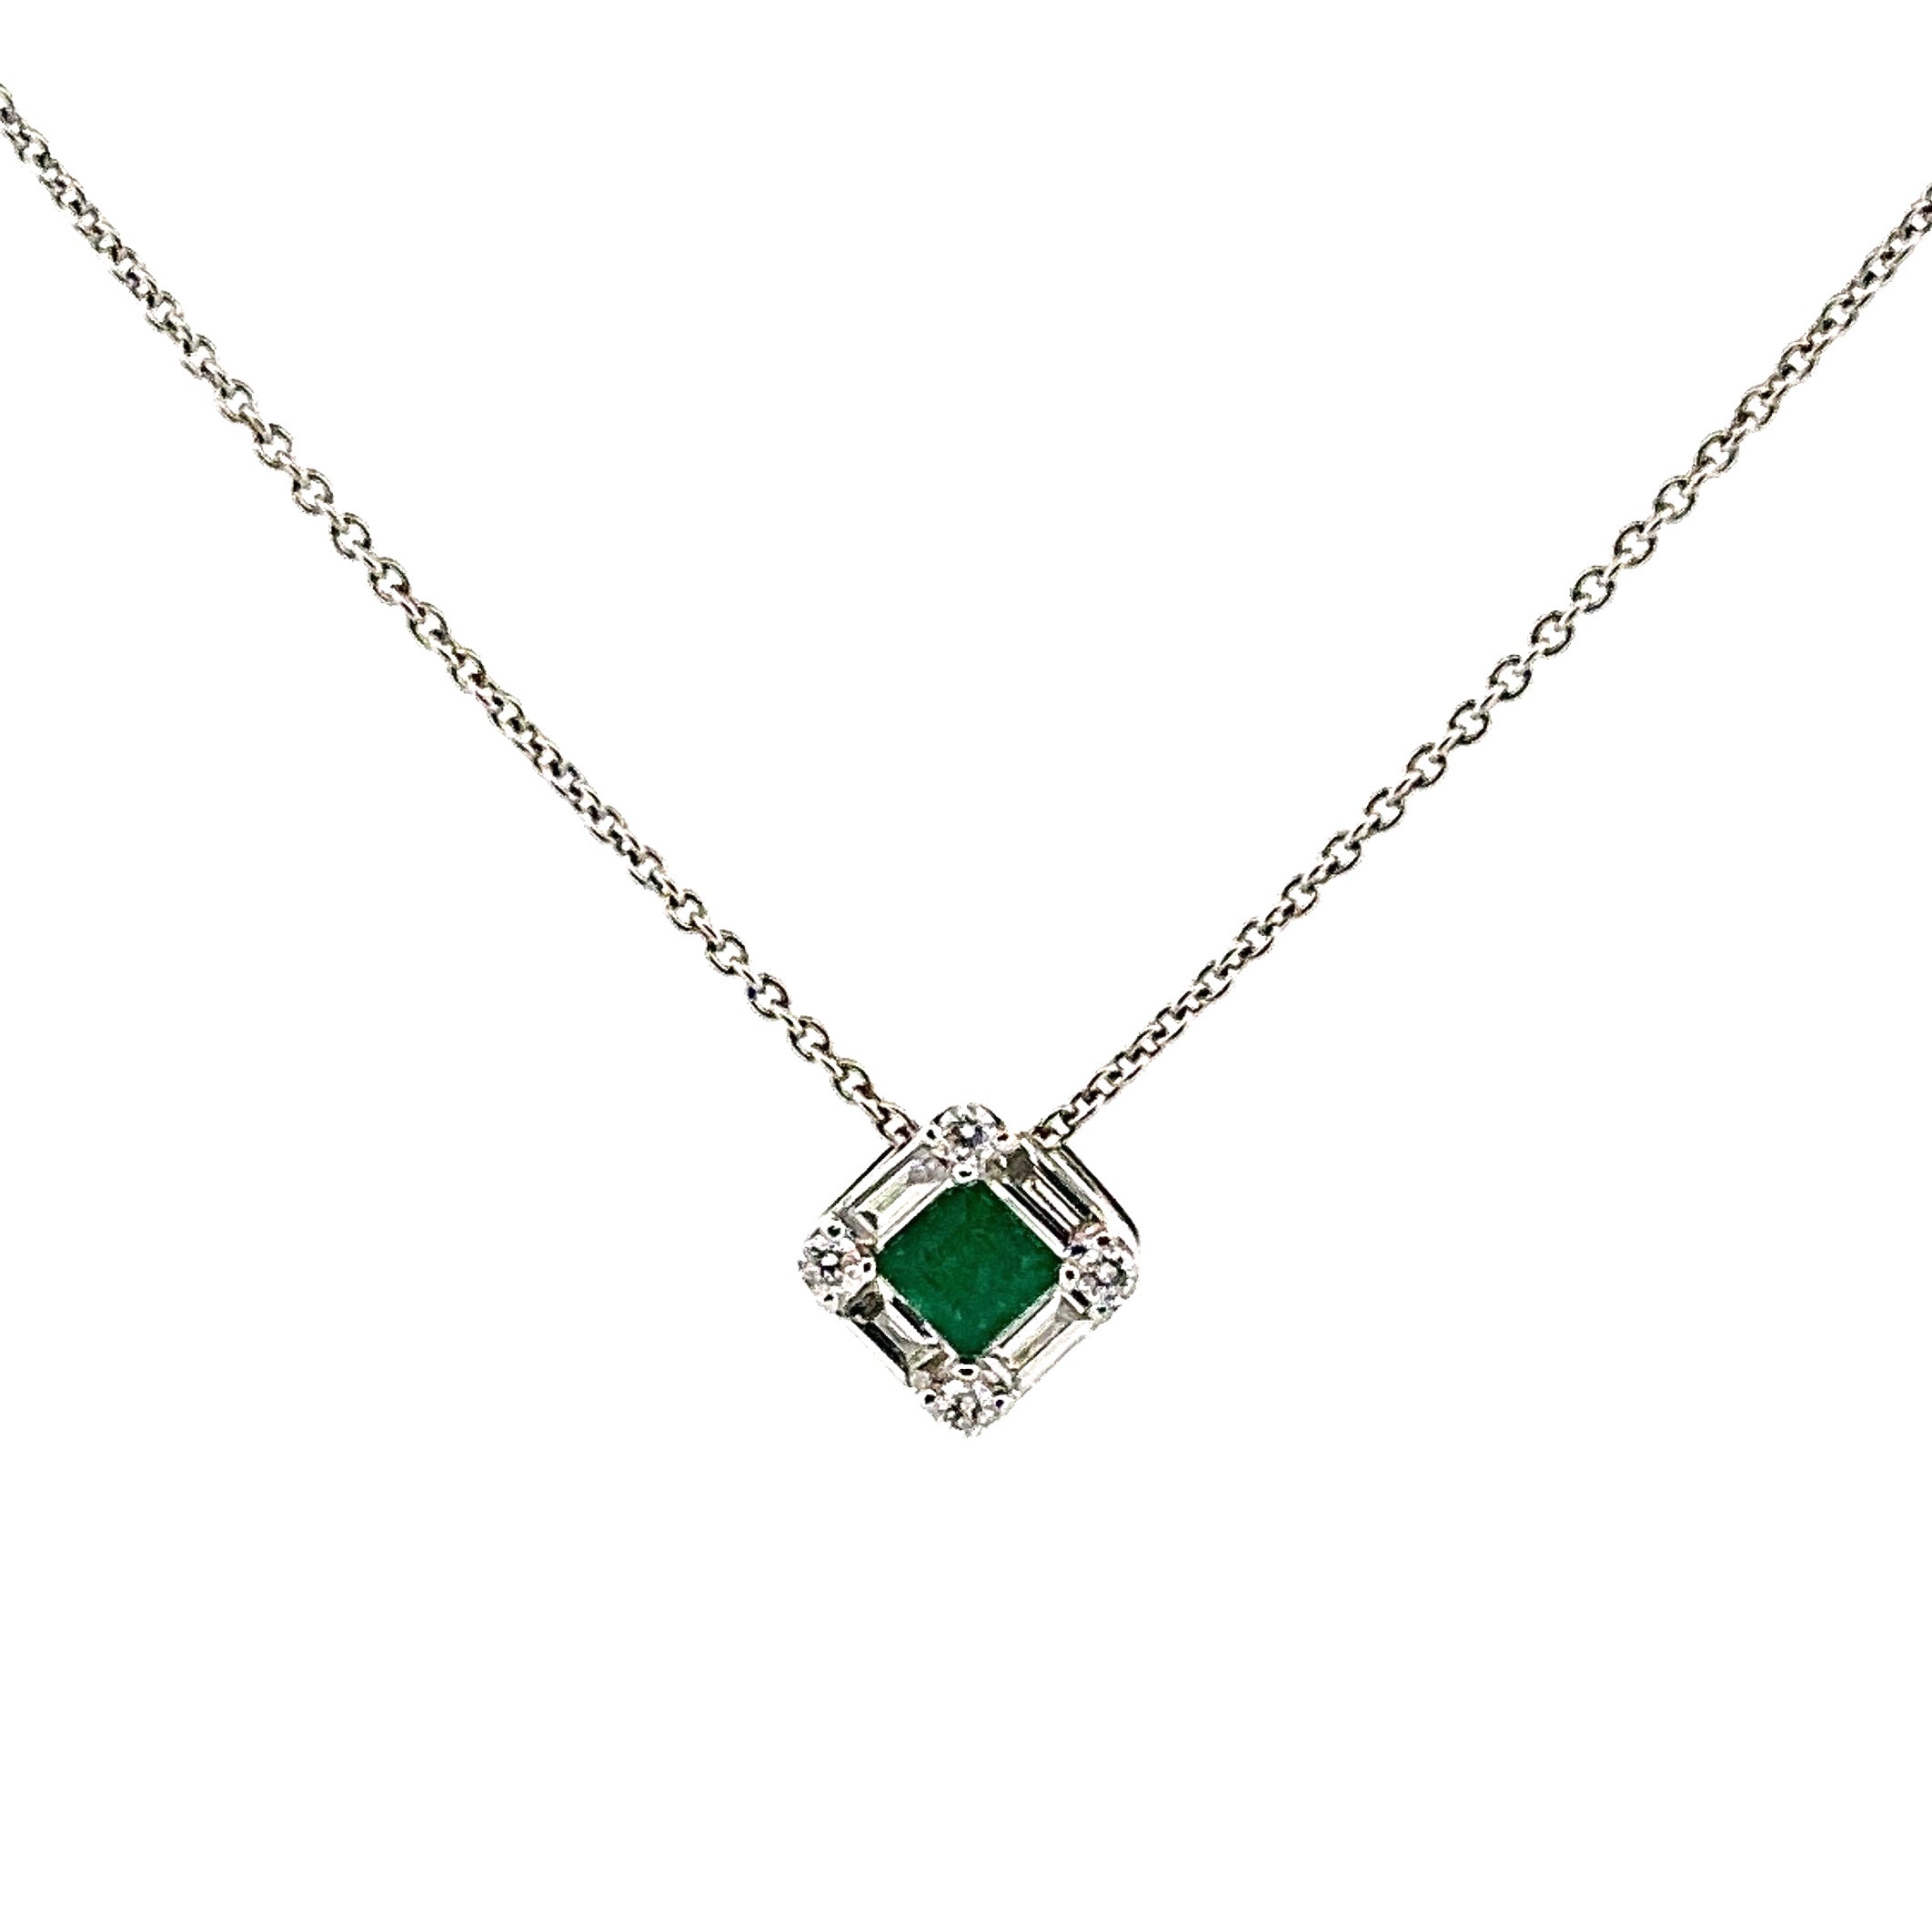 9ct white gold emerald pendant chain